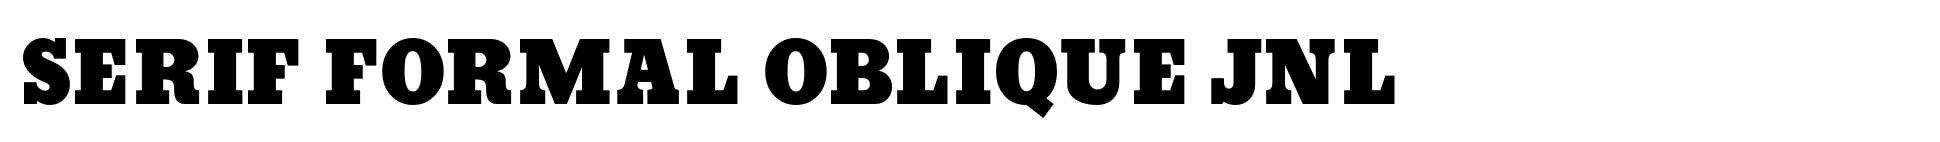 Serif Formal Oblique JNL